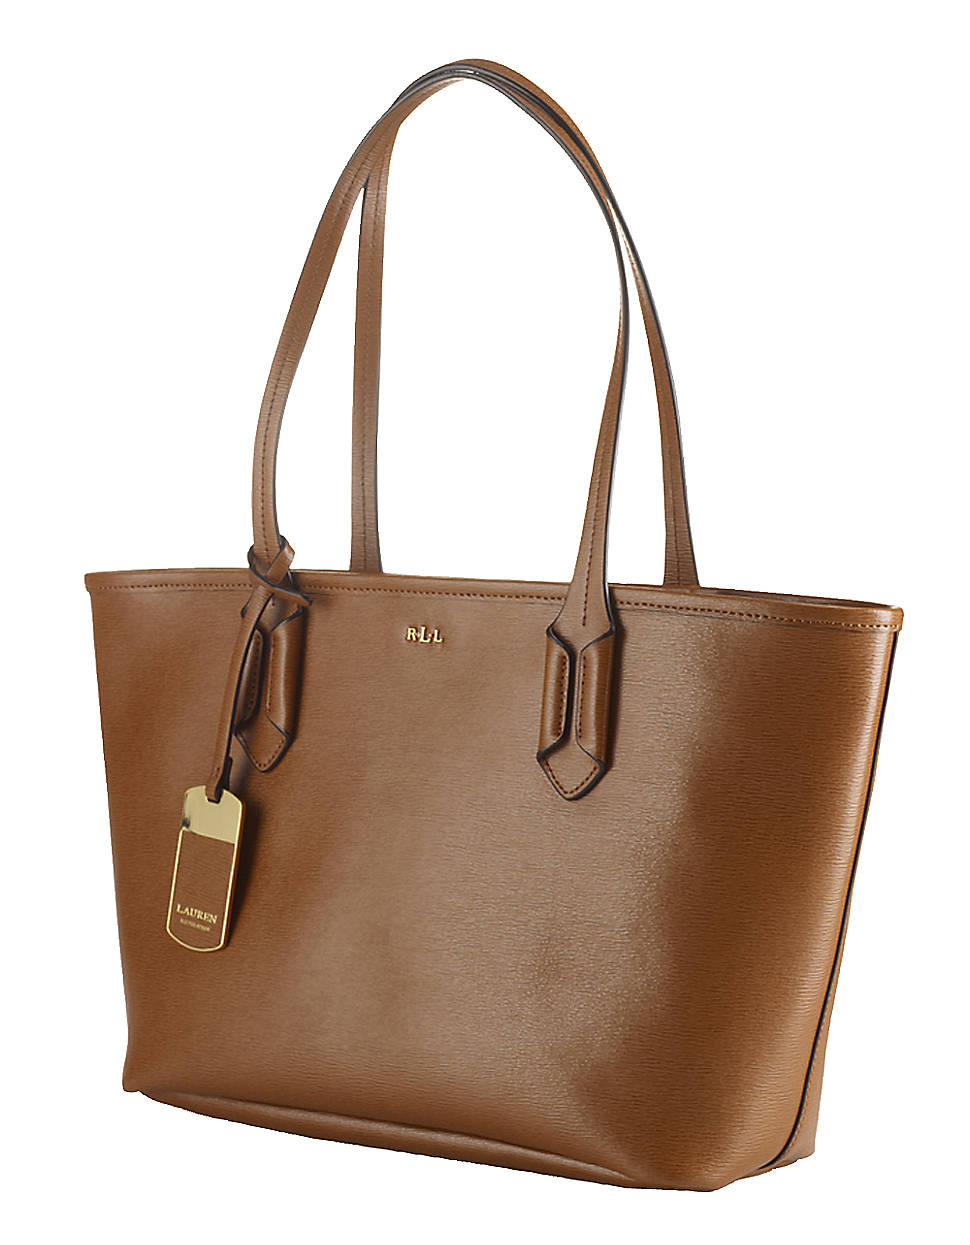 Lauren By Ralph Lauren Tate Leather Shopper Bag in Brown (LAUREN TAN) | Lyst